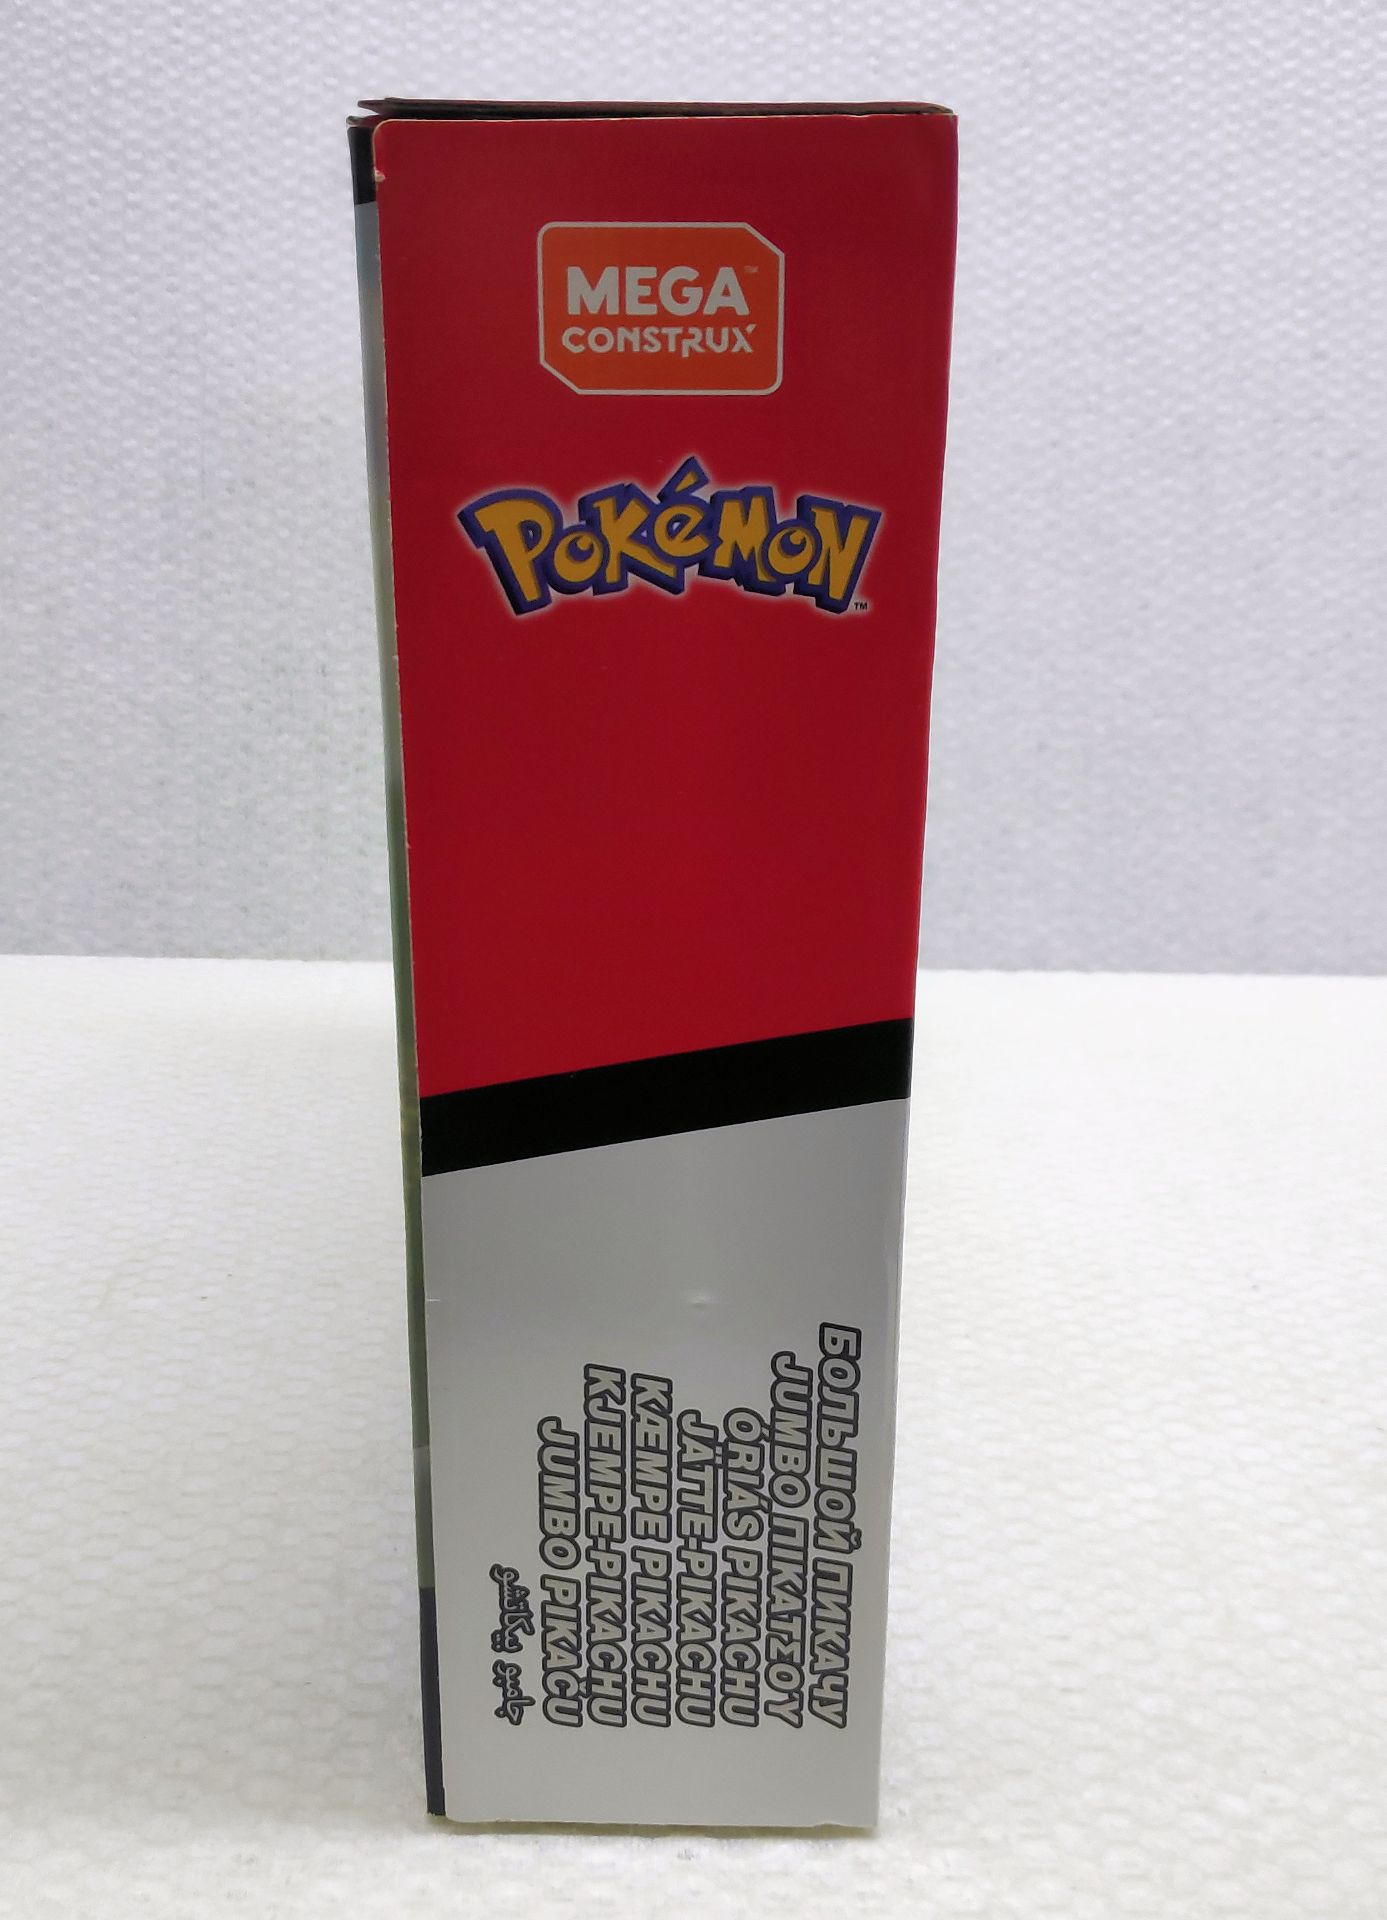 1 x Pokemon Mega Construx Jumbo Pikachu Lego-Style Building Set - New/Boxed - Image 3 of 7